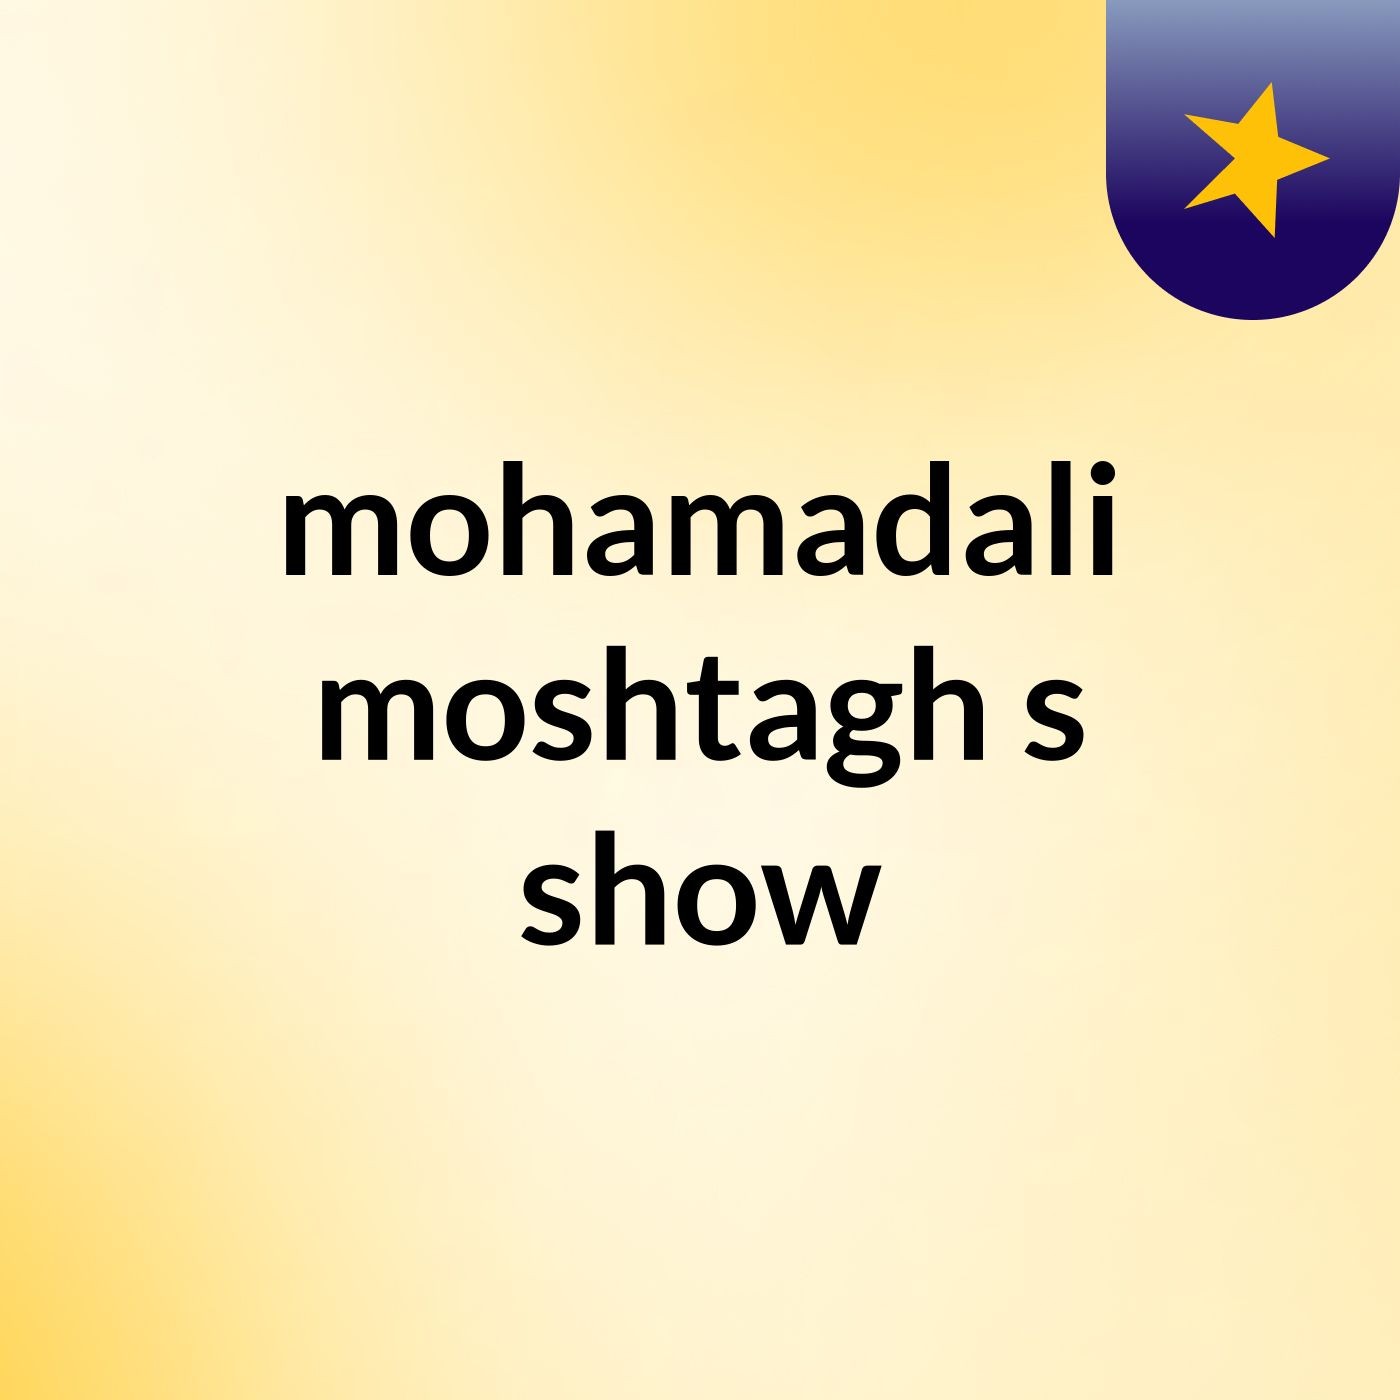 mohamadali moshtagh's show